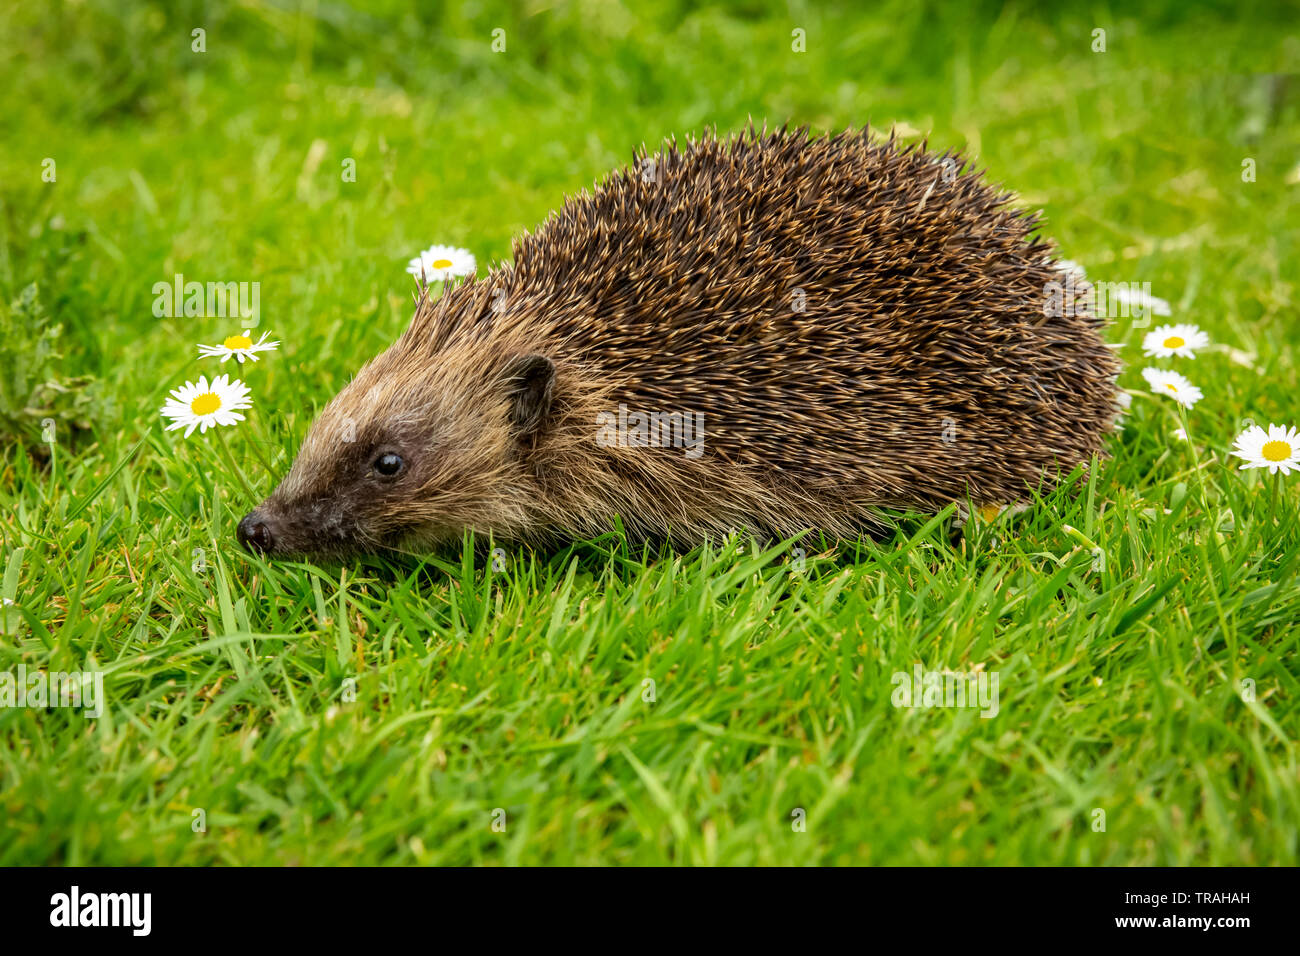 Riccio, Wild, nativo, hedgehog europea nel giardino naturale habitat con erba verde e bianco margherite. Rivolto verso sinistra. Close up.sfocato sfondo verde Foto Stock